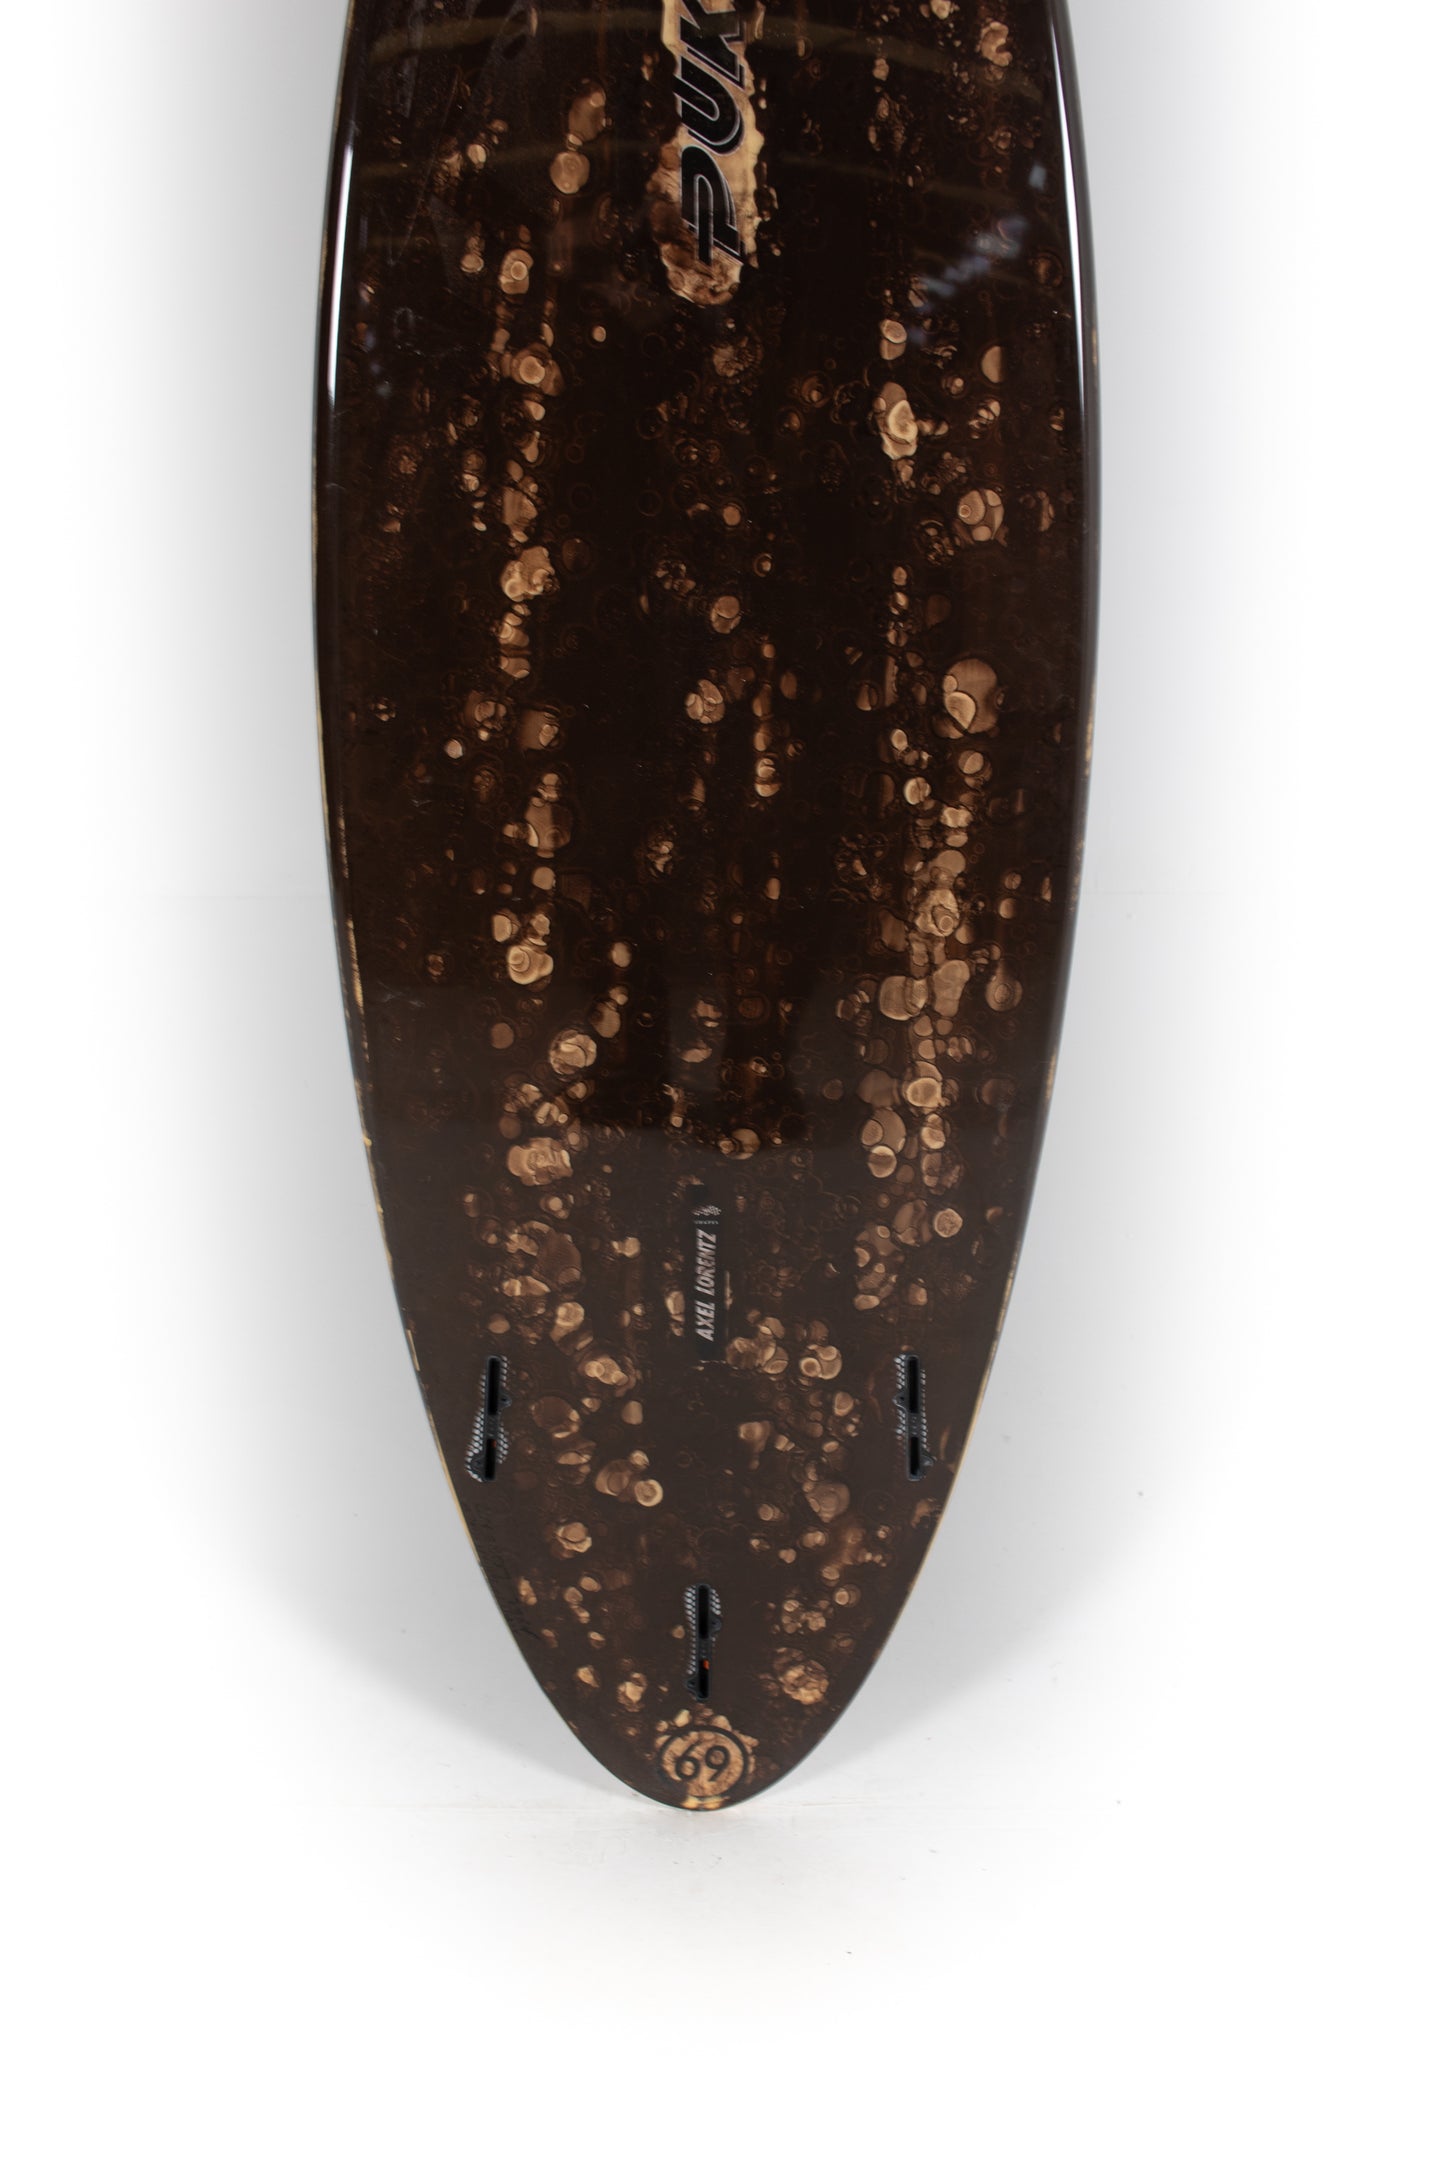 
                  
                    Pukas Surf Shop - Pukas Surfboard - 69ER PRO by Axel Lorentz - 6’0” x 20,75 x 2,63 - 35,1L - AX08904
                  
                